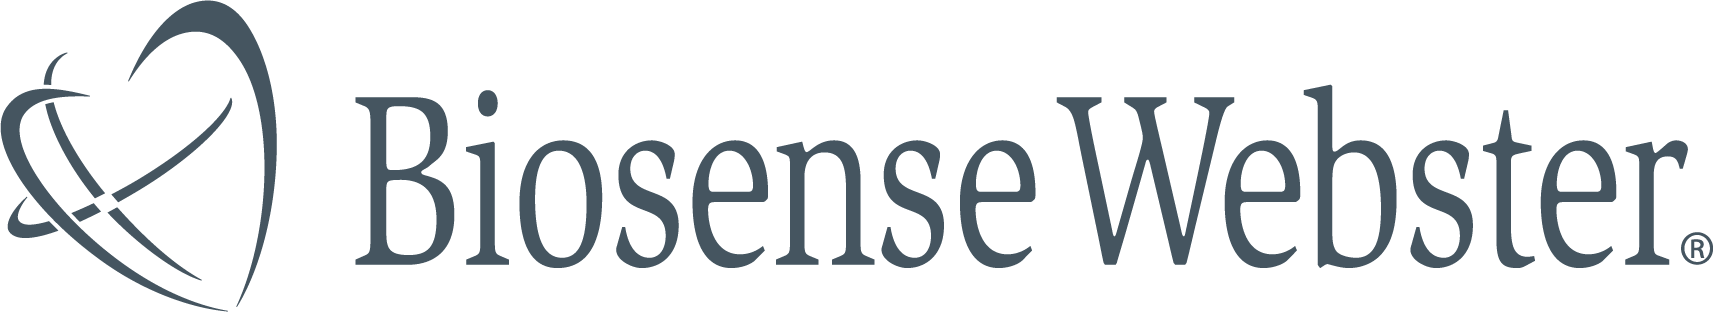 logo-biosense